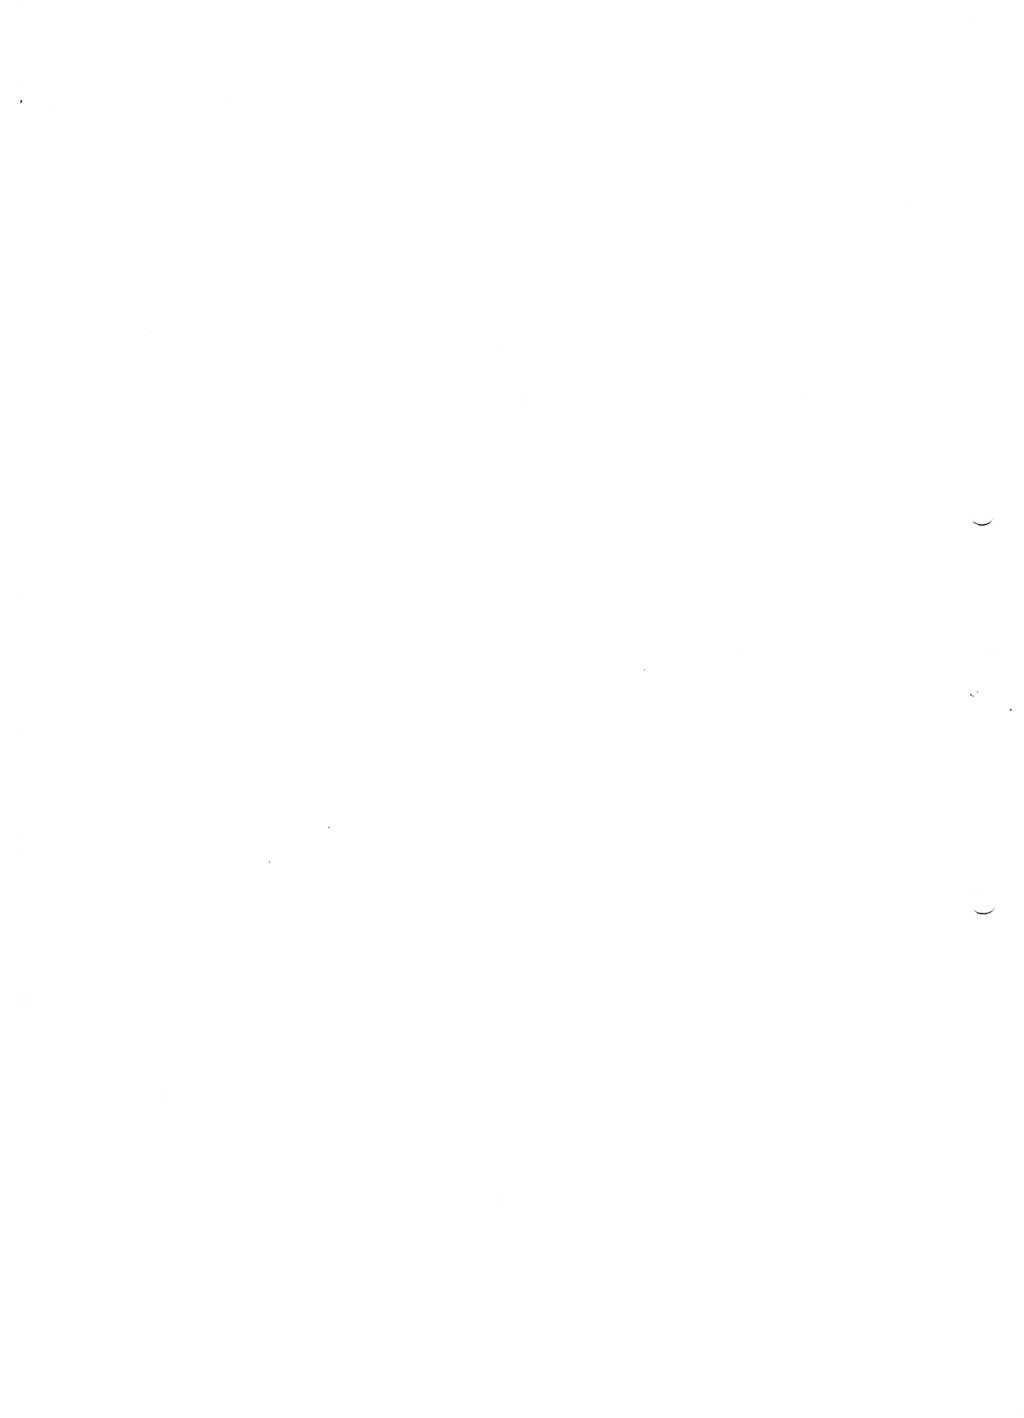 Tagungen der Volkskammer (VK) der Deutschen Demokratischen Republik (DDR), 10. Wahlperiode 1990, Seite 237 (VK. DDR 10. WP. 1990, Prot. Tg. 1-38, 5.4.-2.10.1990, S. 237)